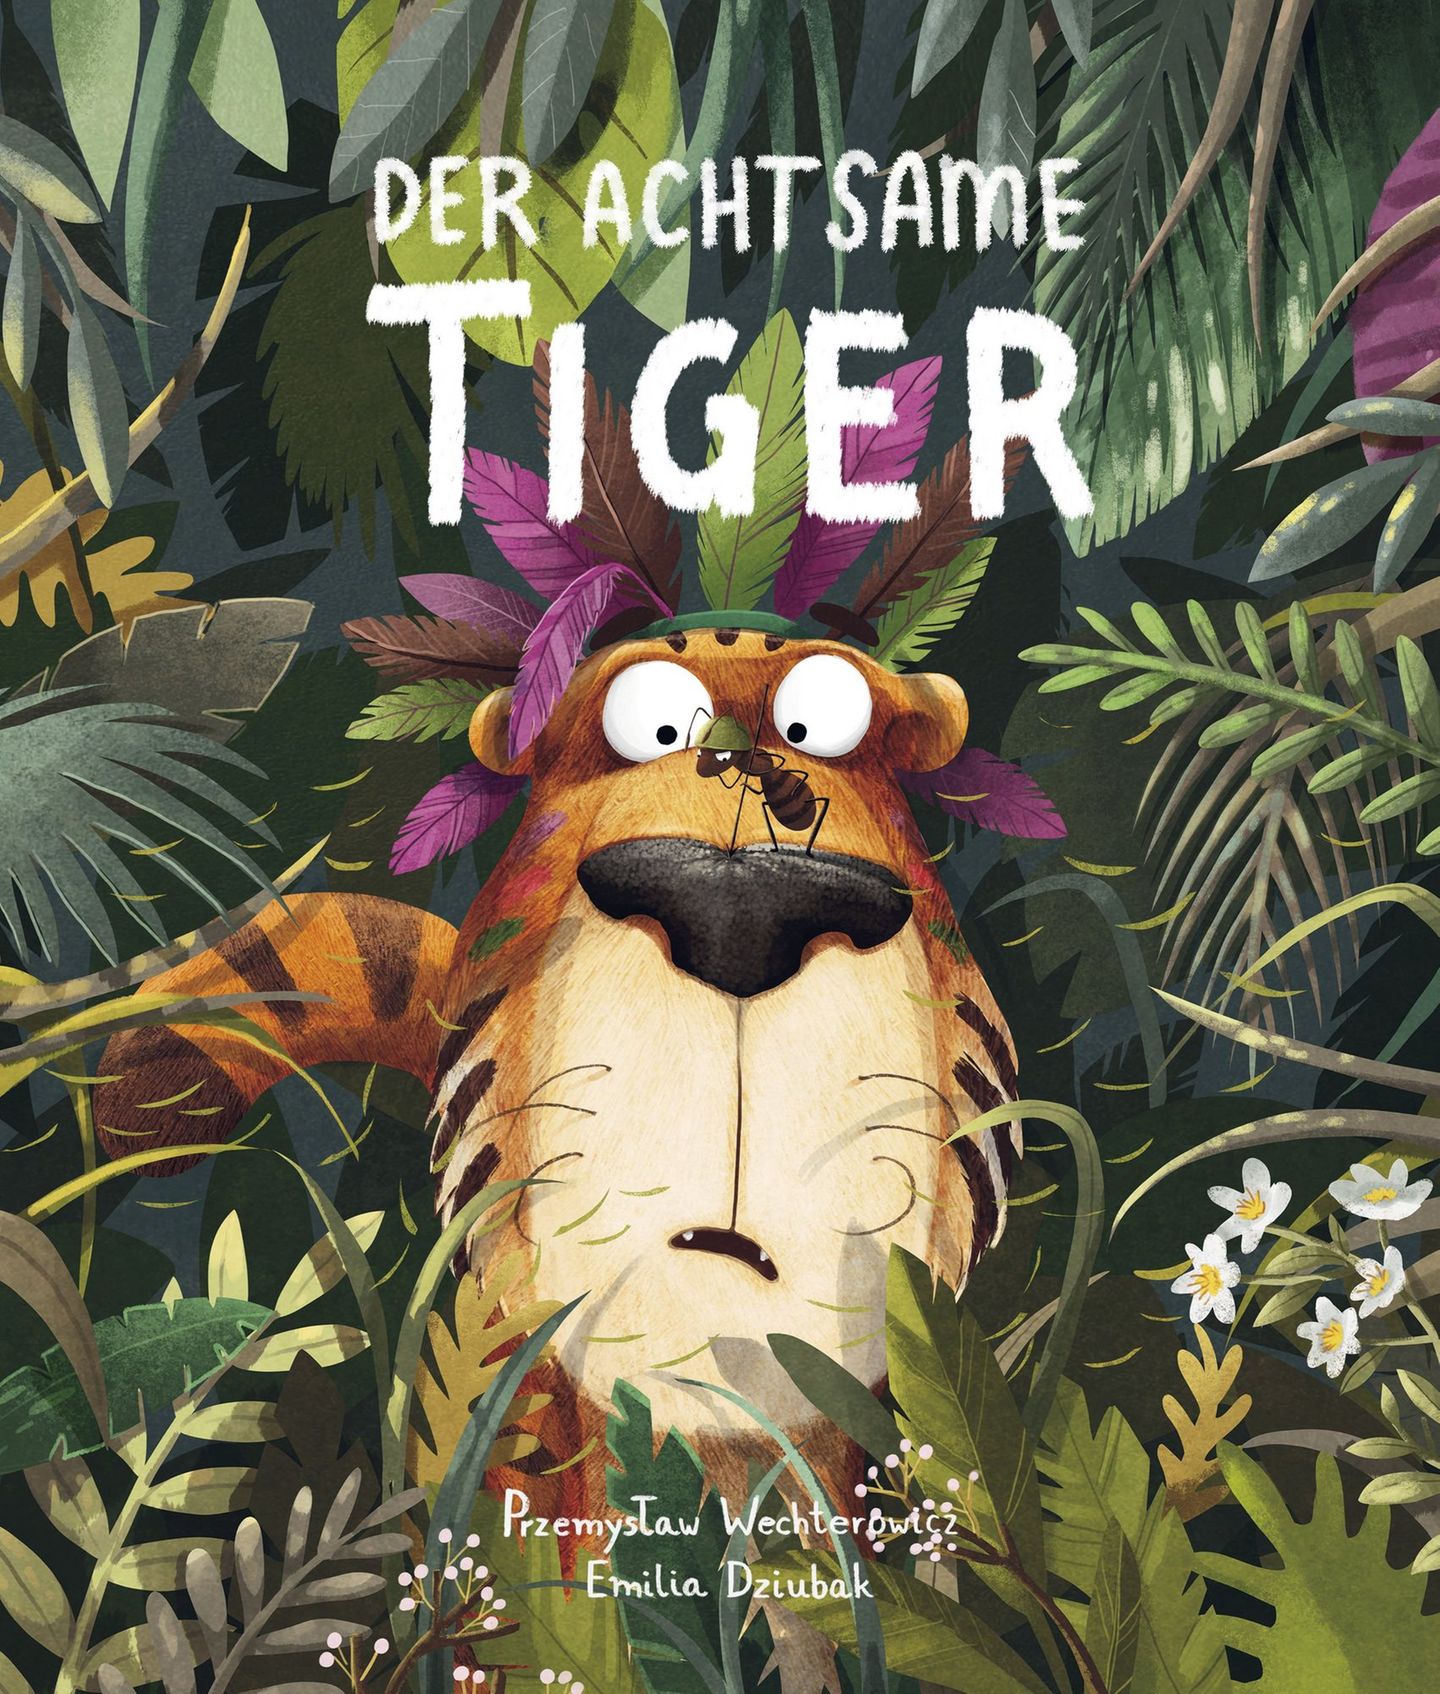 Kinderbücher über Achtsamkeit: "Der achtsame Tiger"